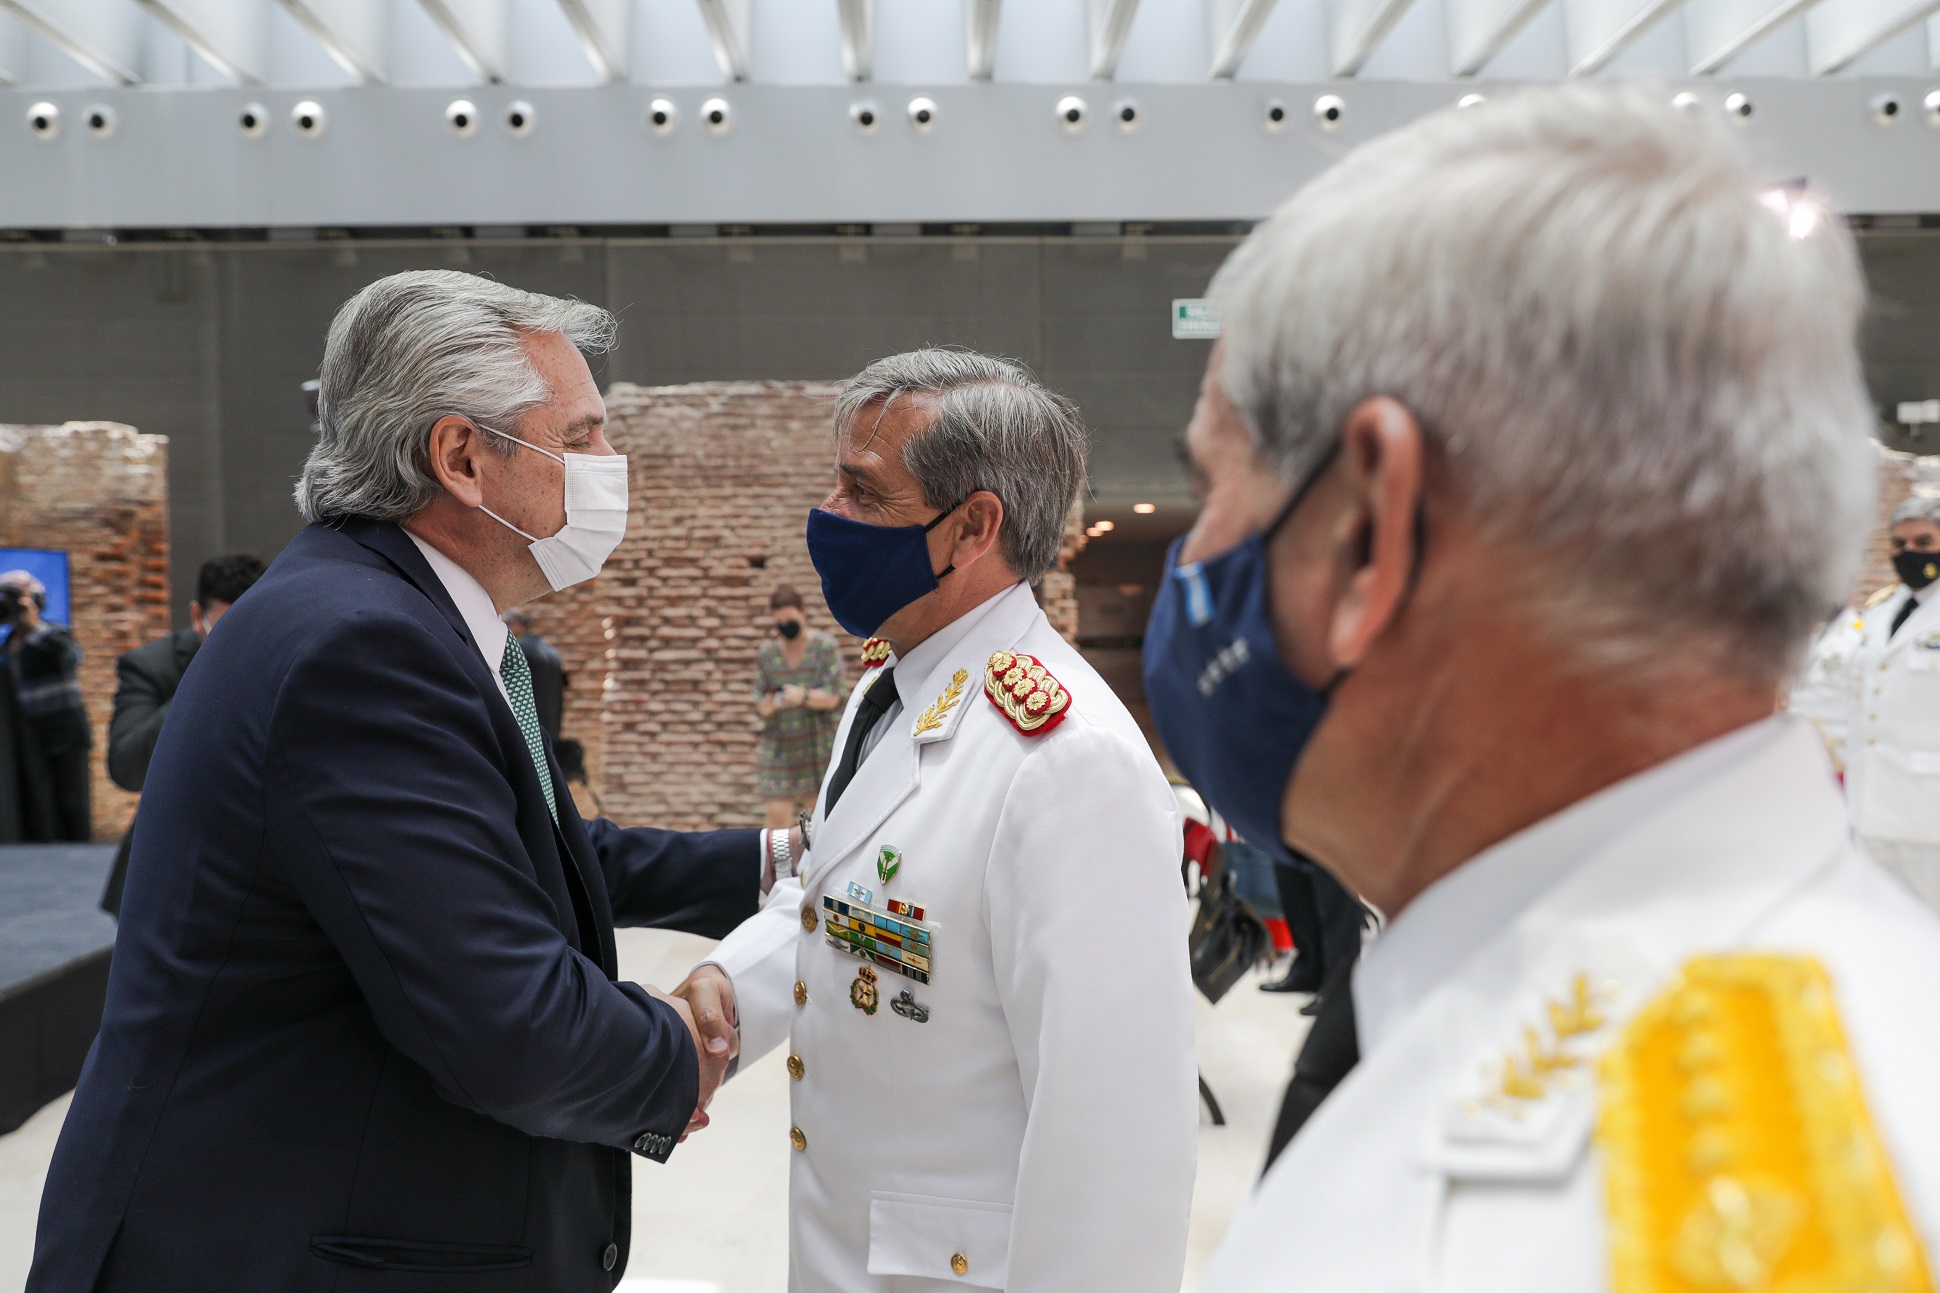 “Poner en valor y jerarquía a nuestras Fuerzas Armadas es un imperativo que me he impuesto como misión de presidente”, afirmó Alberto Fernández